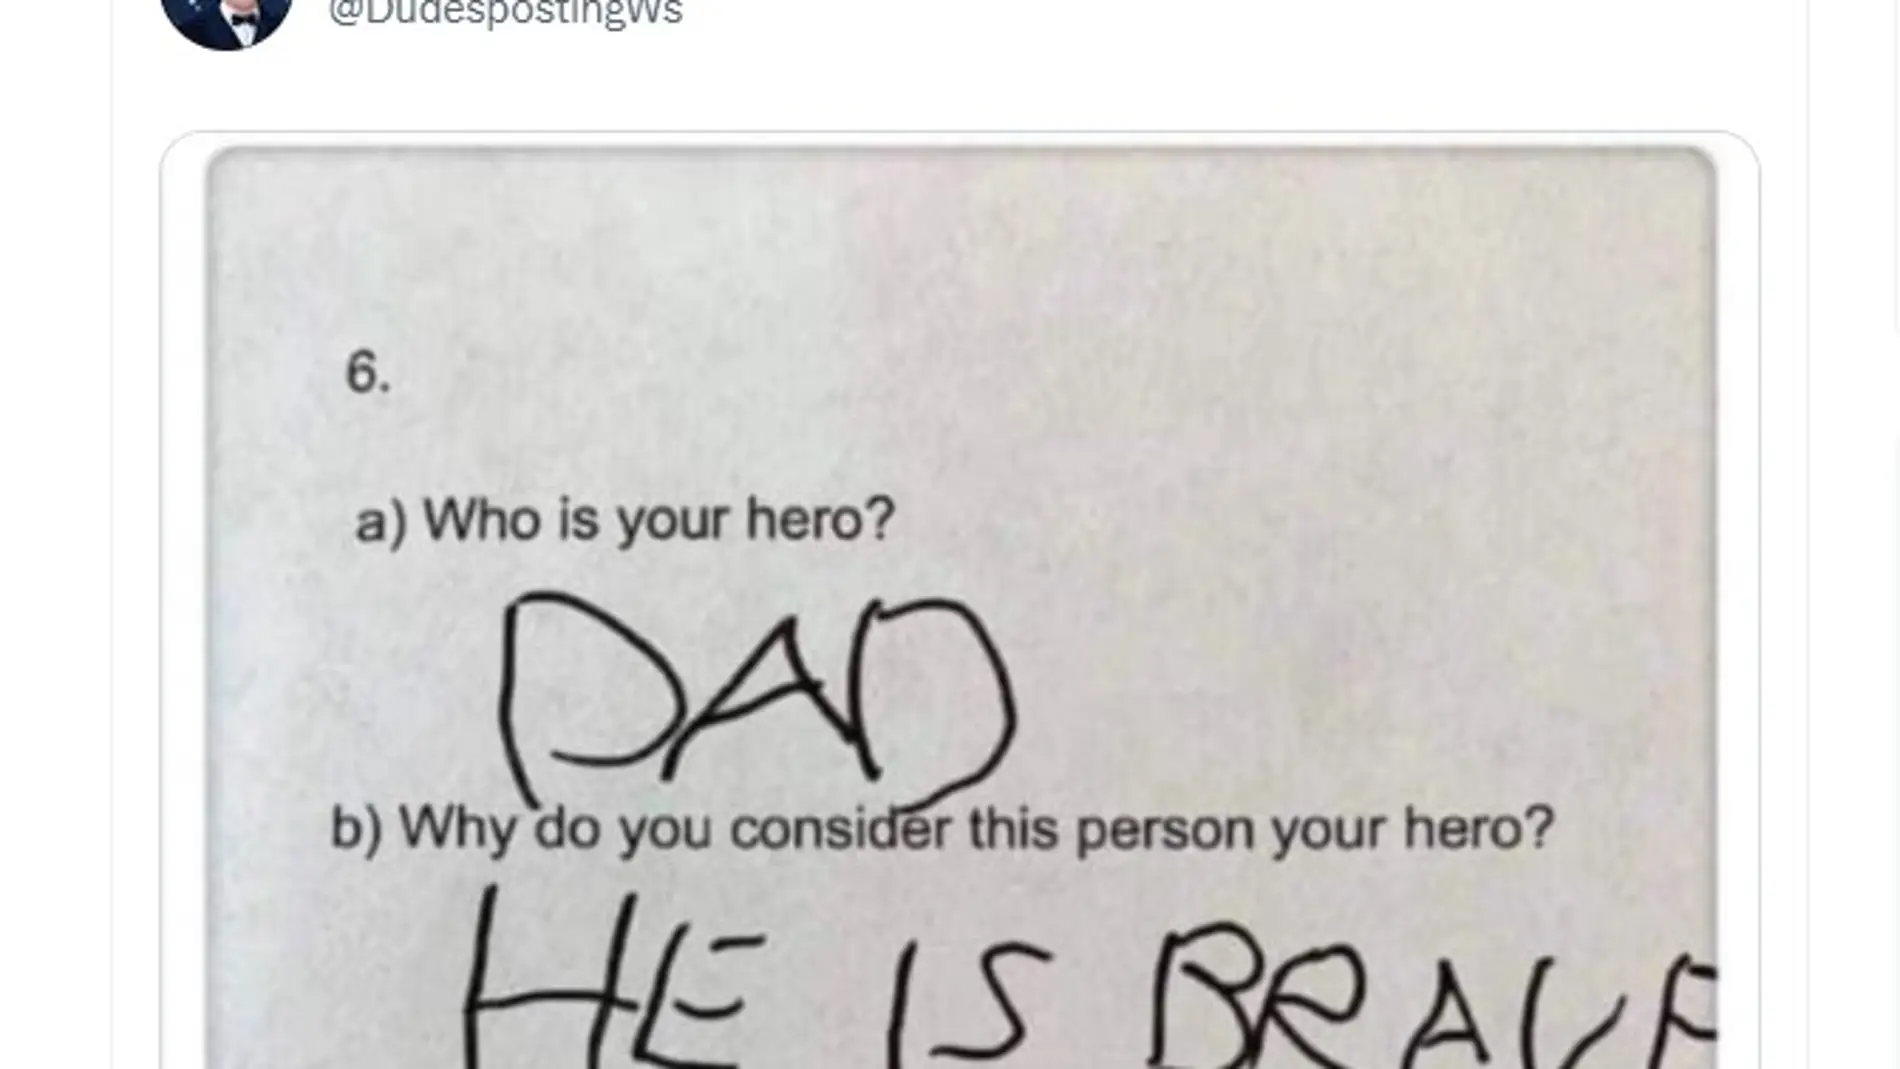 Sinceridad por encima de todo: la respuesta de un niño cuando le preguntan con quién lucha su héroe